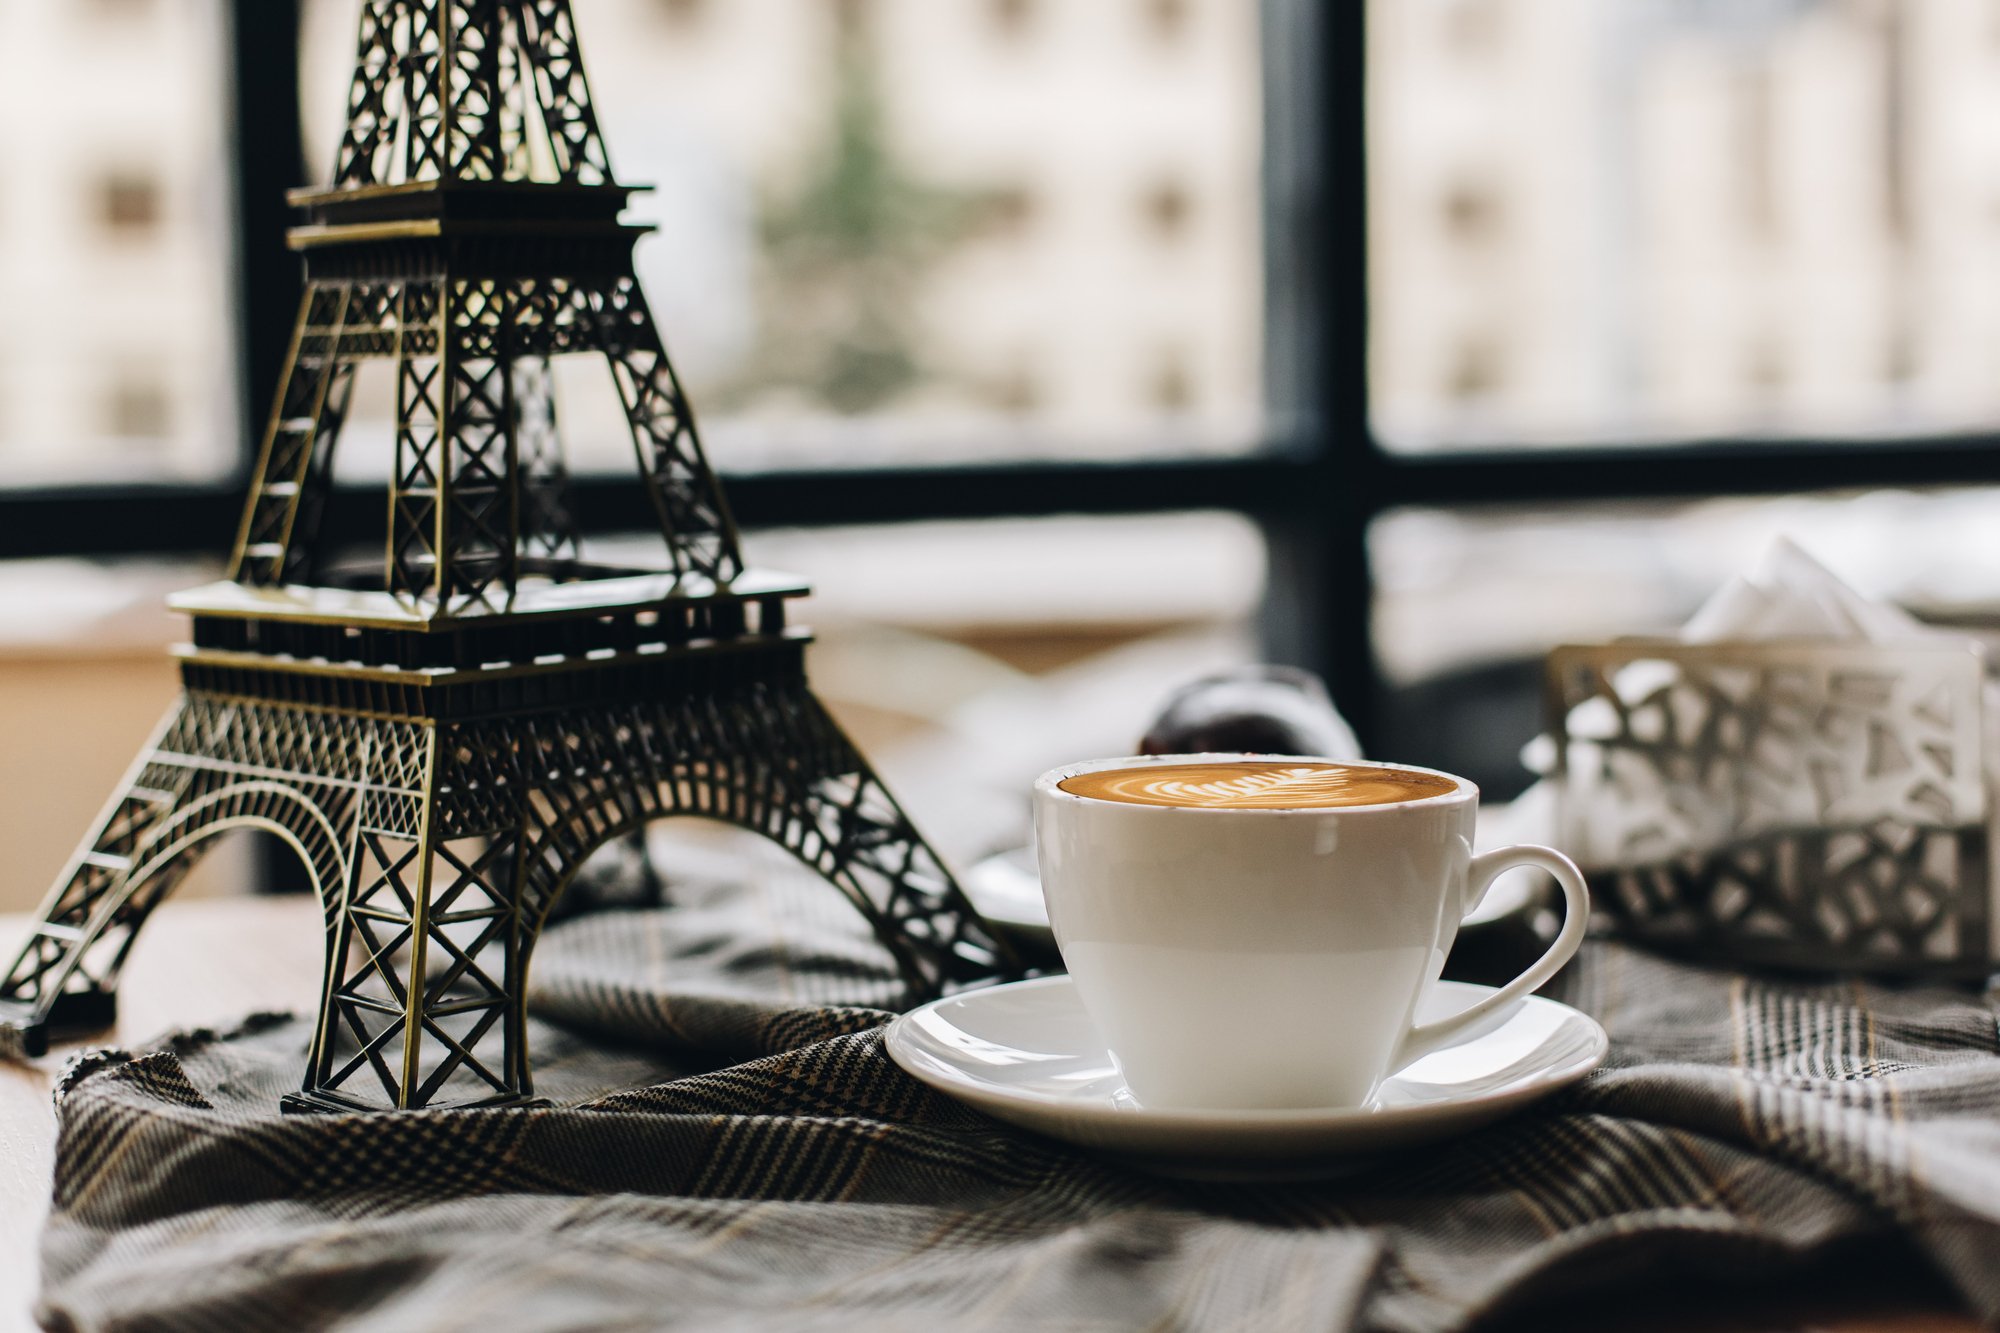 Как кофе появился во Франции и зачем Наполеон оставил свою треуголку в кофейне?